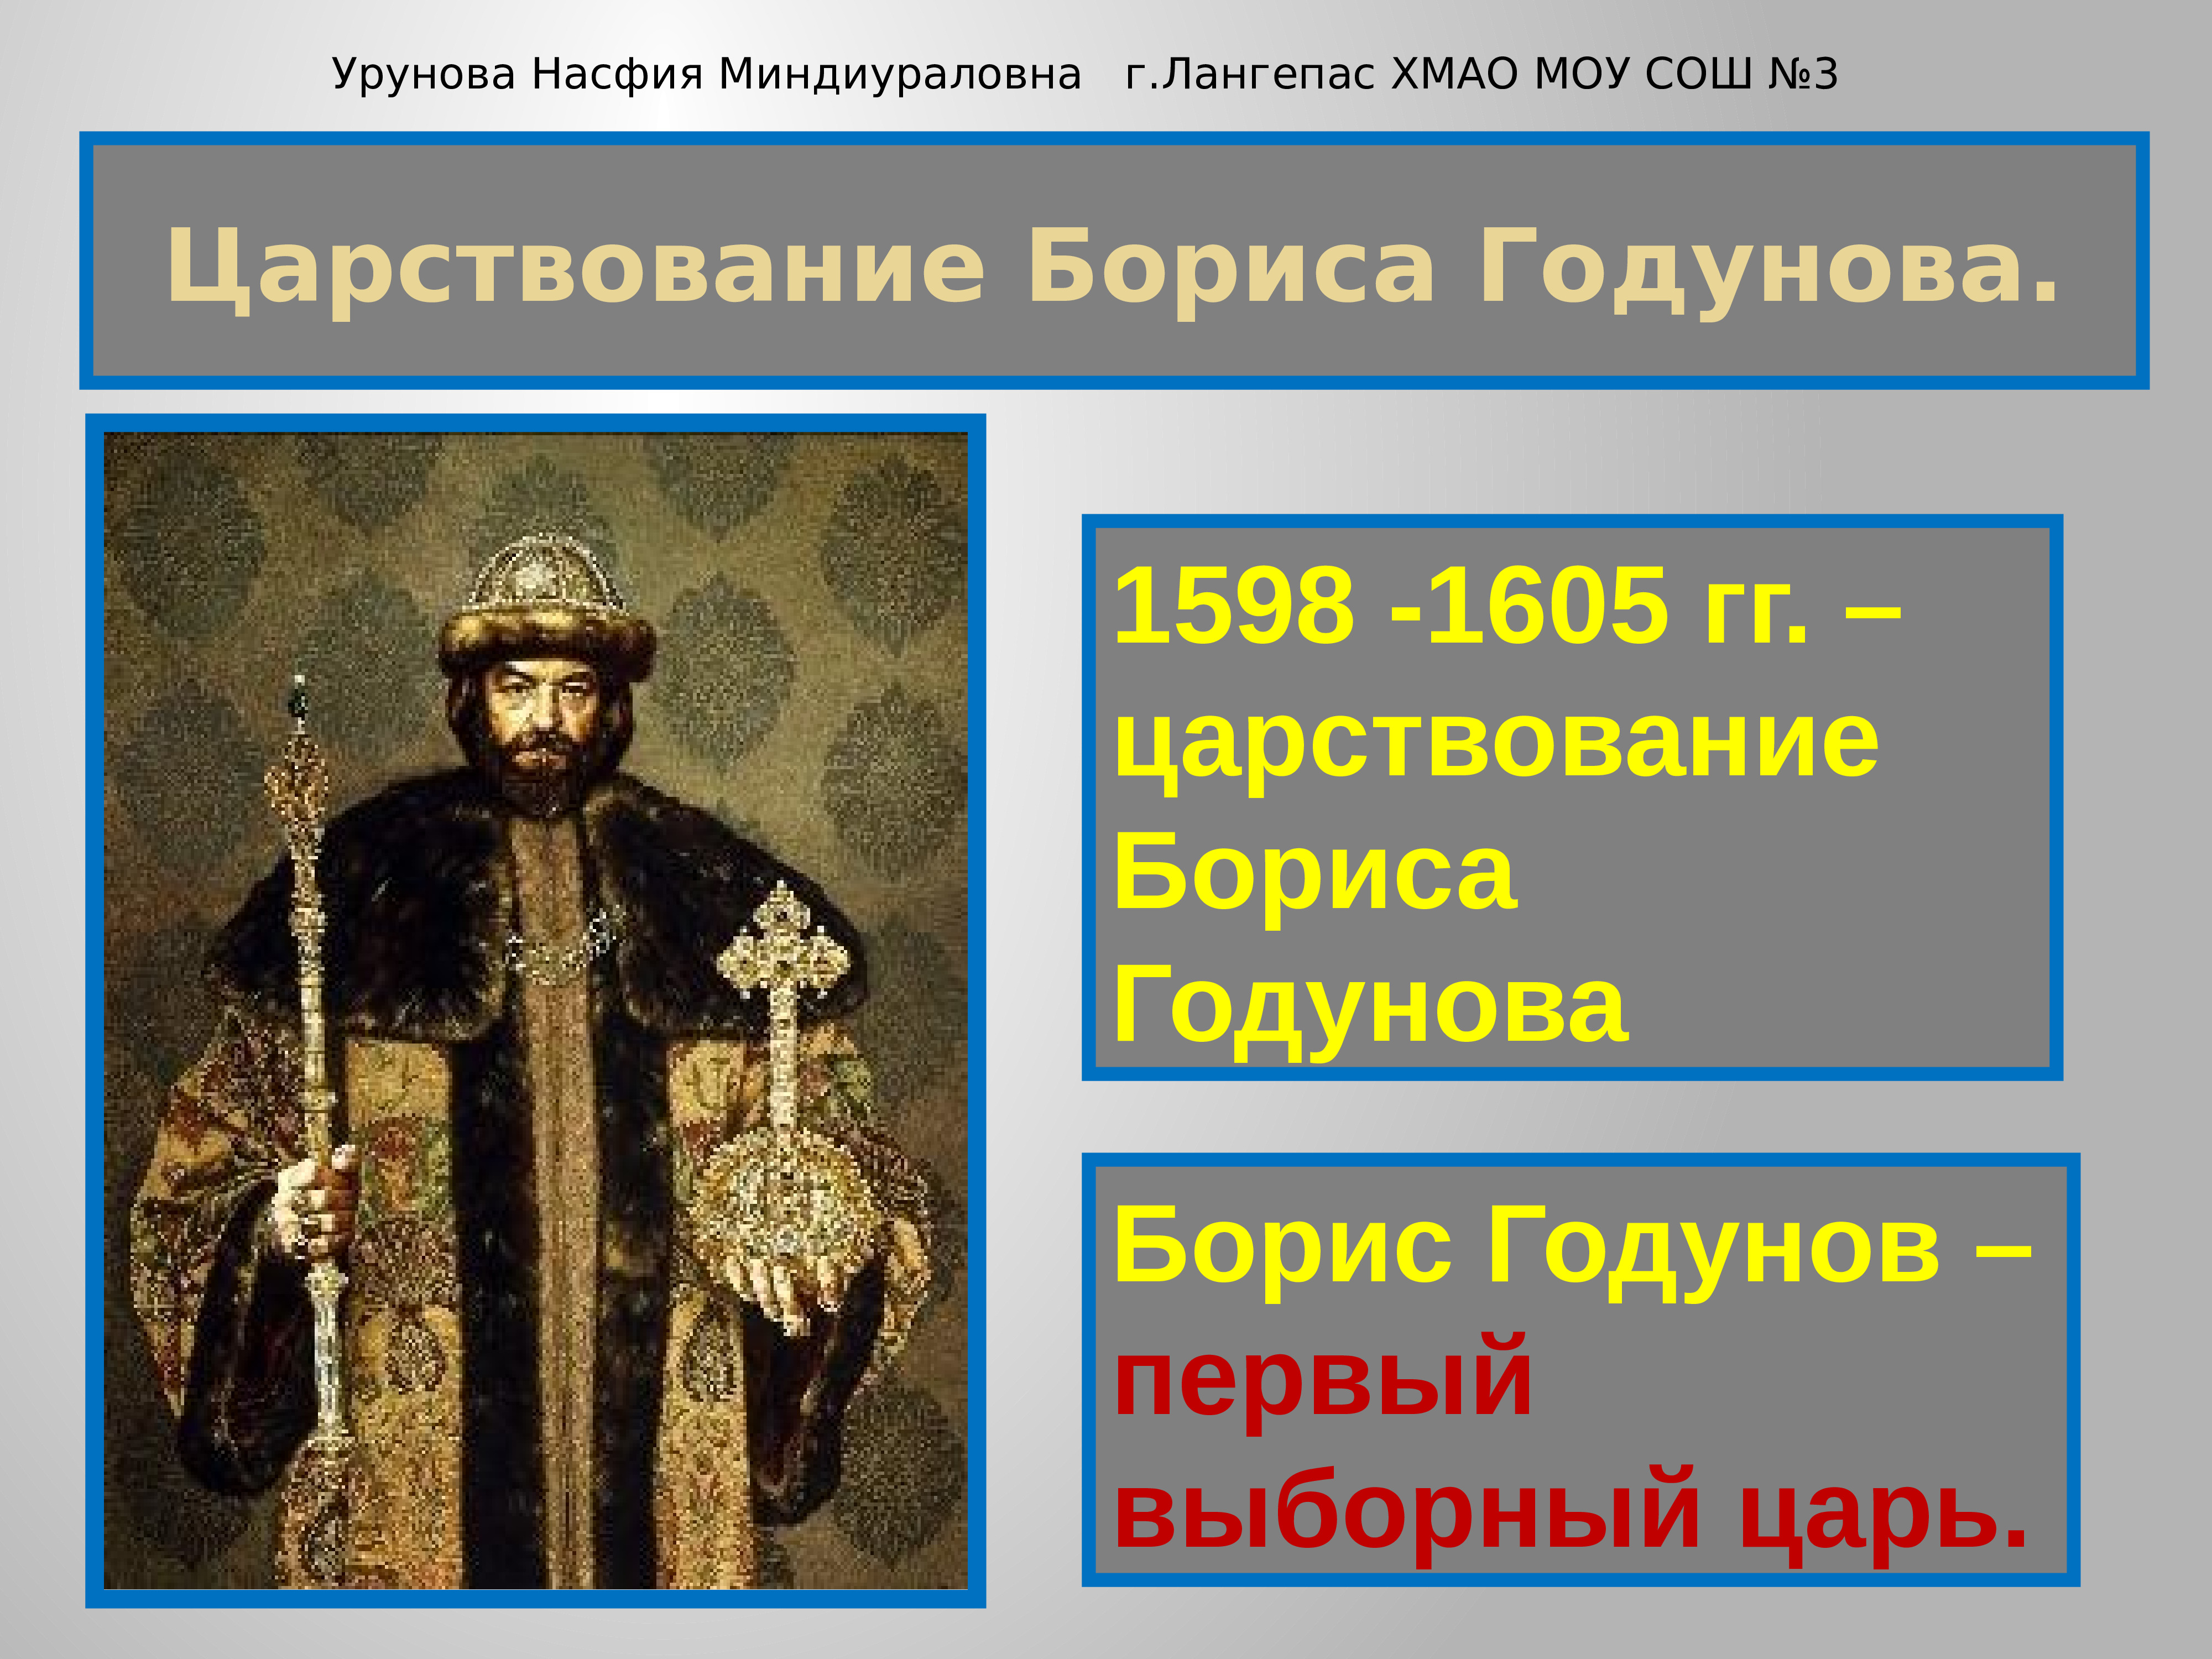 Год начала правления бориса годунова. Правление Бориса Годунова 1598-1605. 1598 – 1605 – Царствование Бориса Годунова.